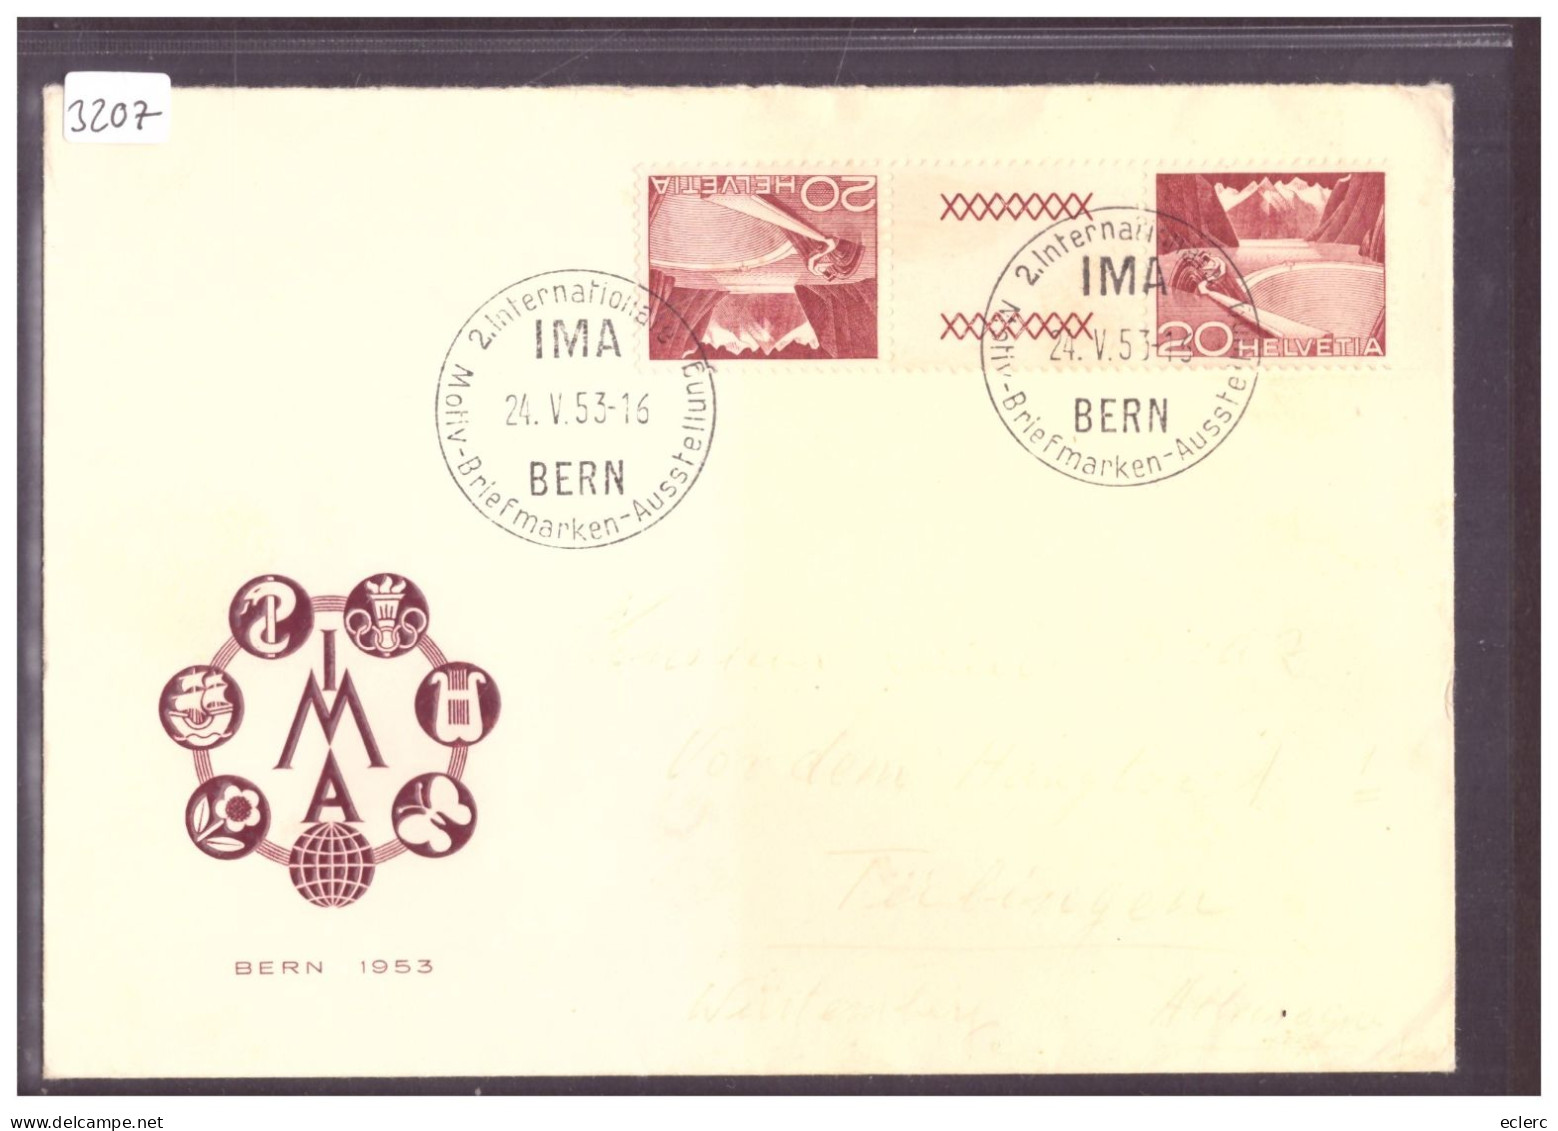 IMA BERN 1953 - MOTIV BRIEFMARKEN AUSSTELLUNG - Lettres & Documents